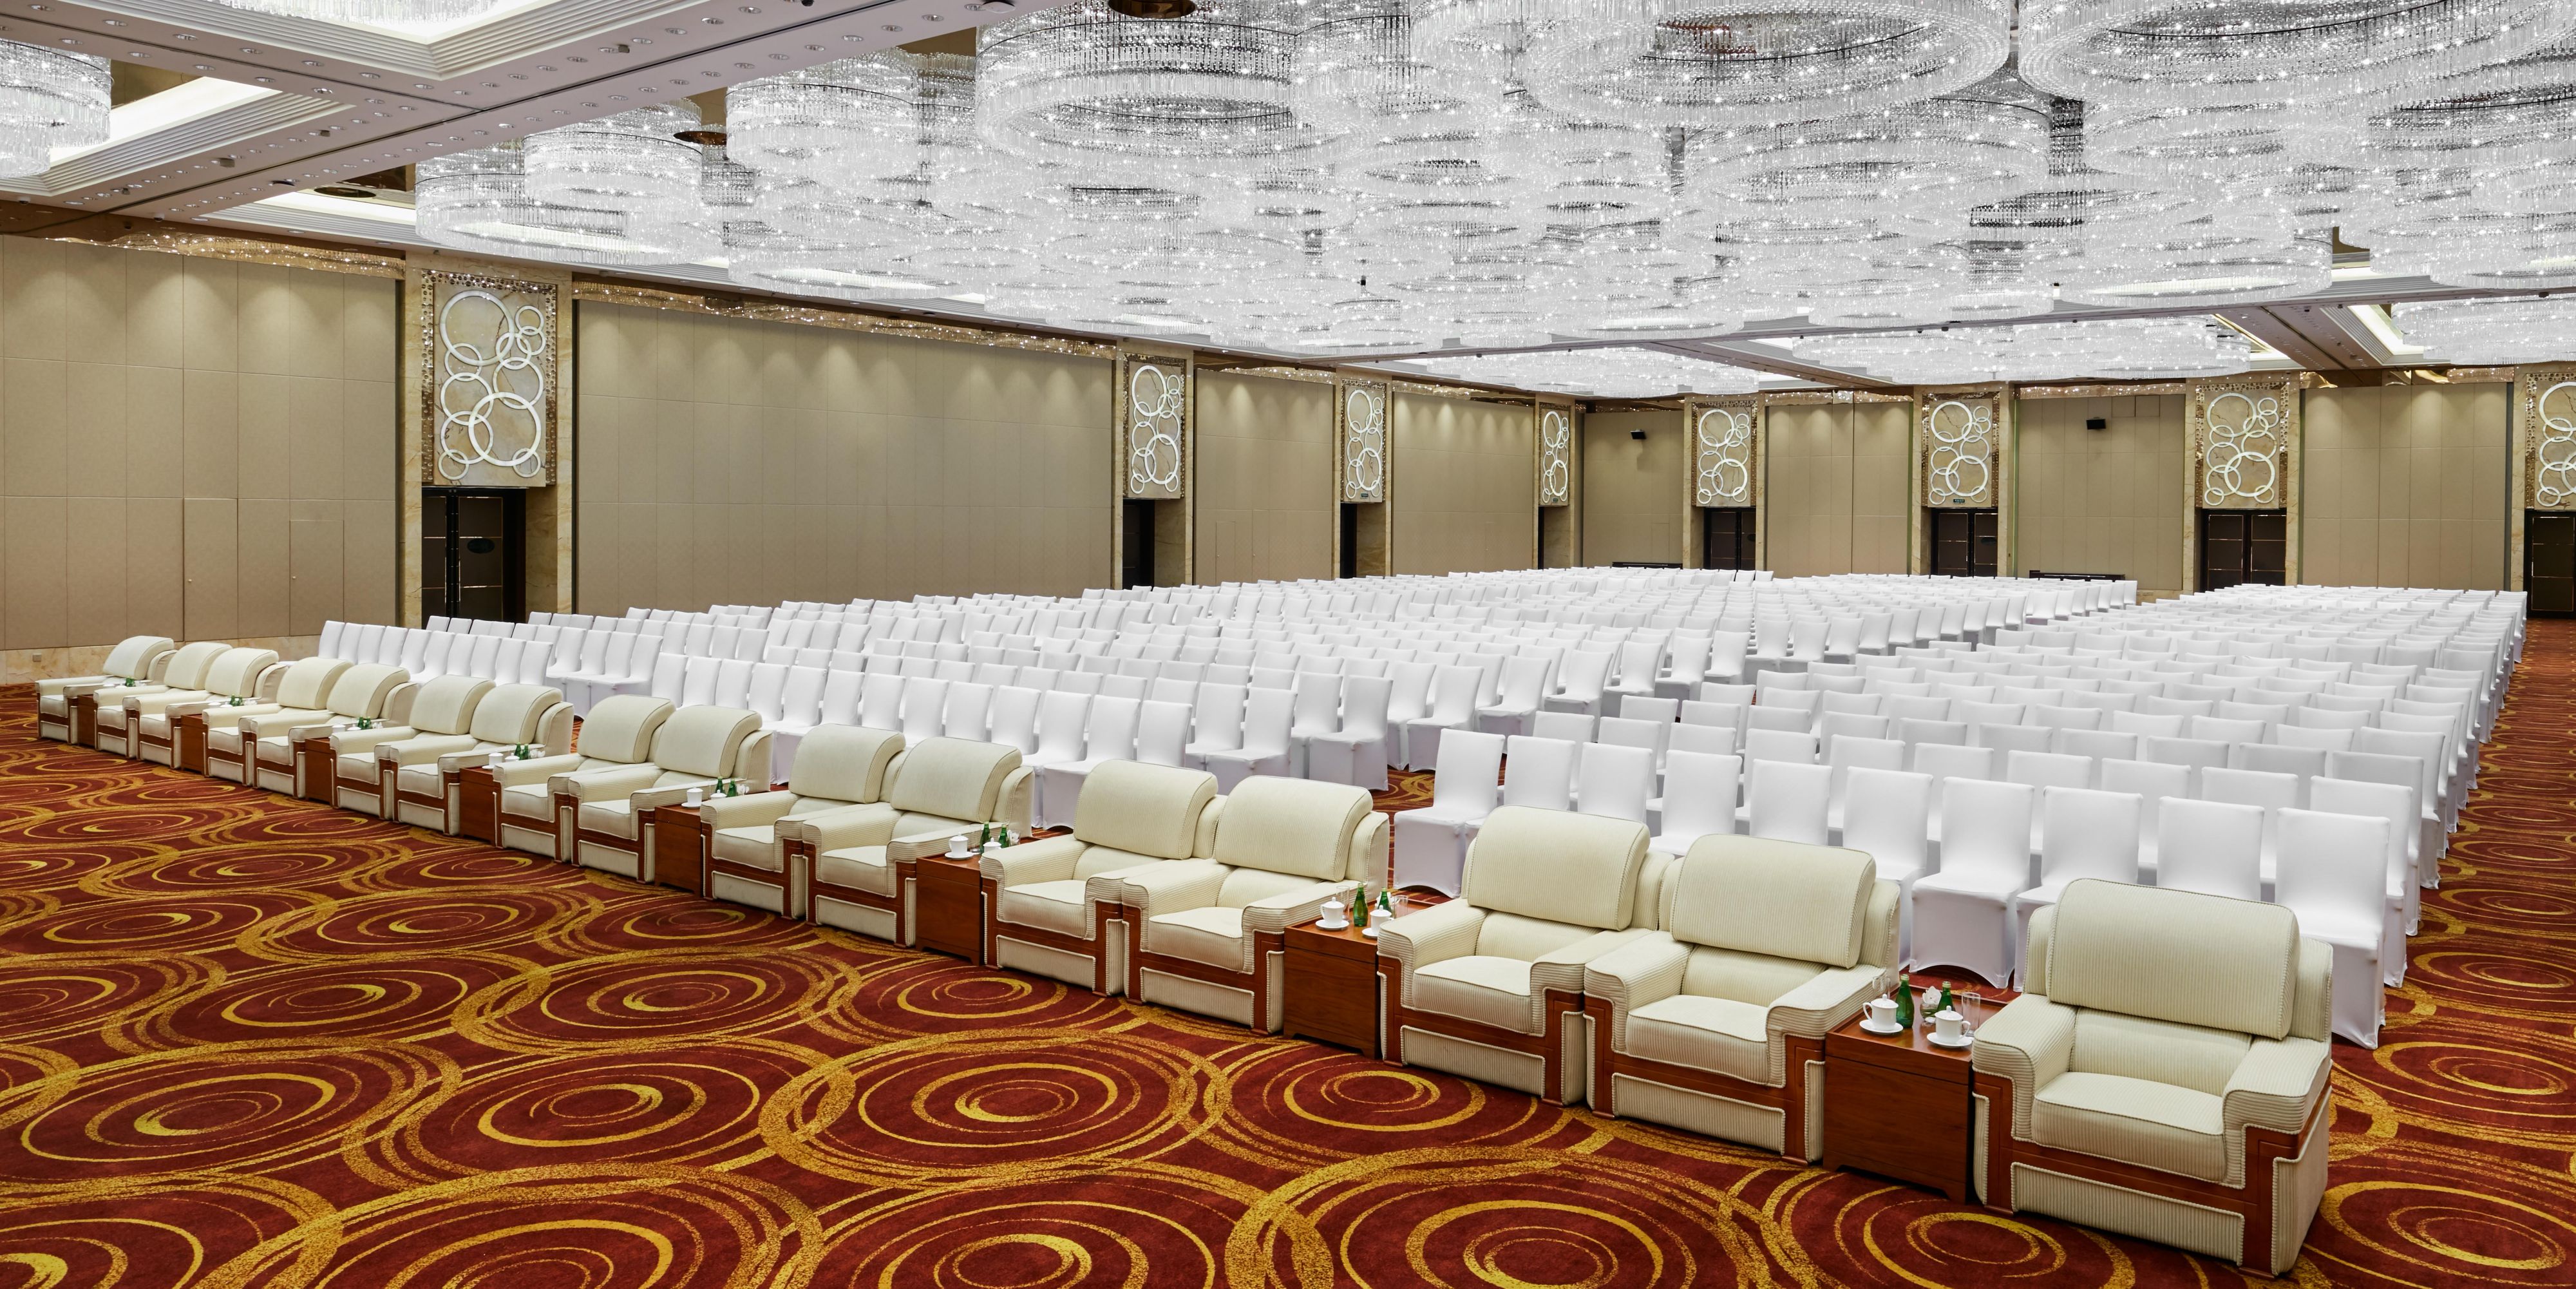 28间大小会议室，总面积达近6000平方米。其中包括1780平方米无柱超大宴会厅-杭州厅（曾是2016年二十国集团工商峰会主会场）,943平方米国际厅以及可容纳166人的圆形峰会式环球厅。杭州洲际酒店每间会议室皆配备先进的影音设备。